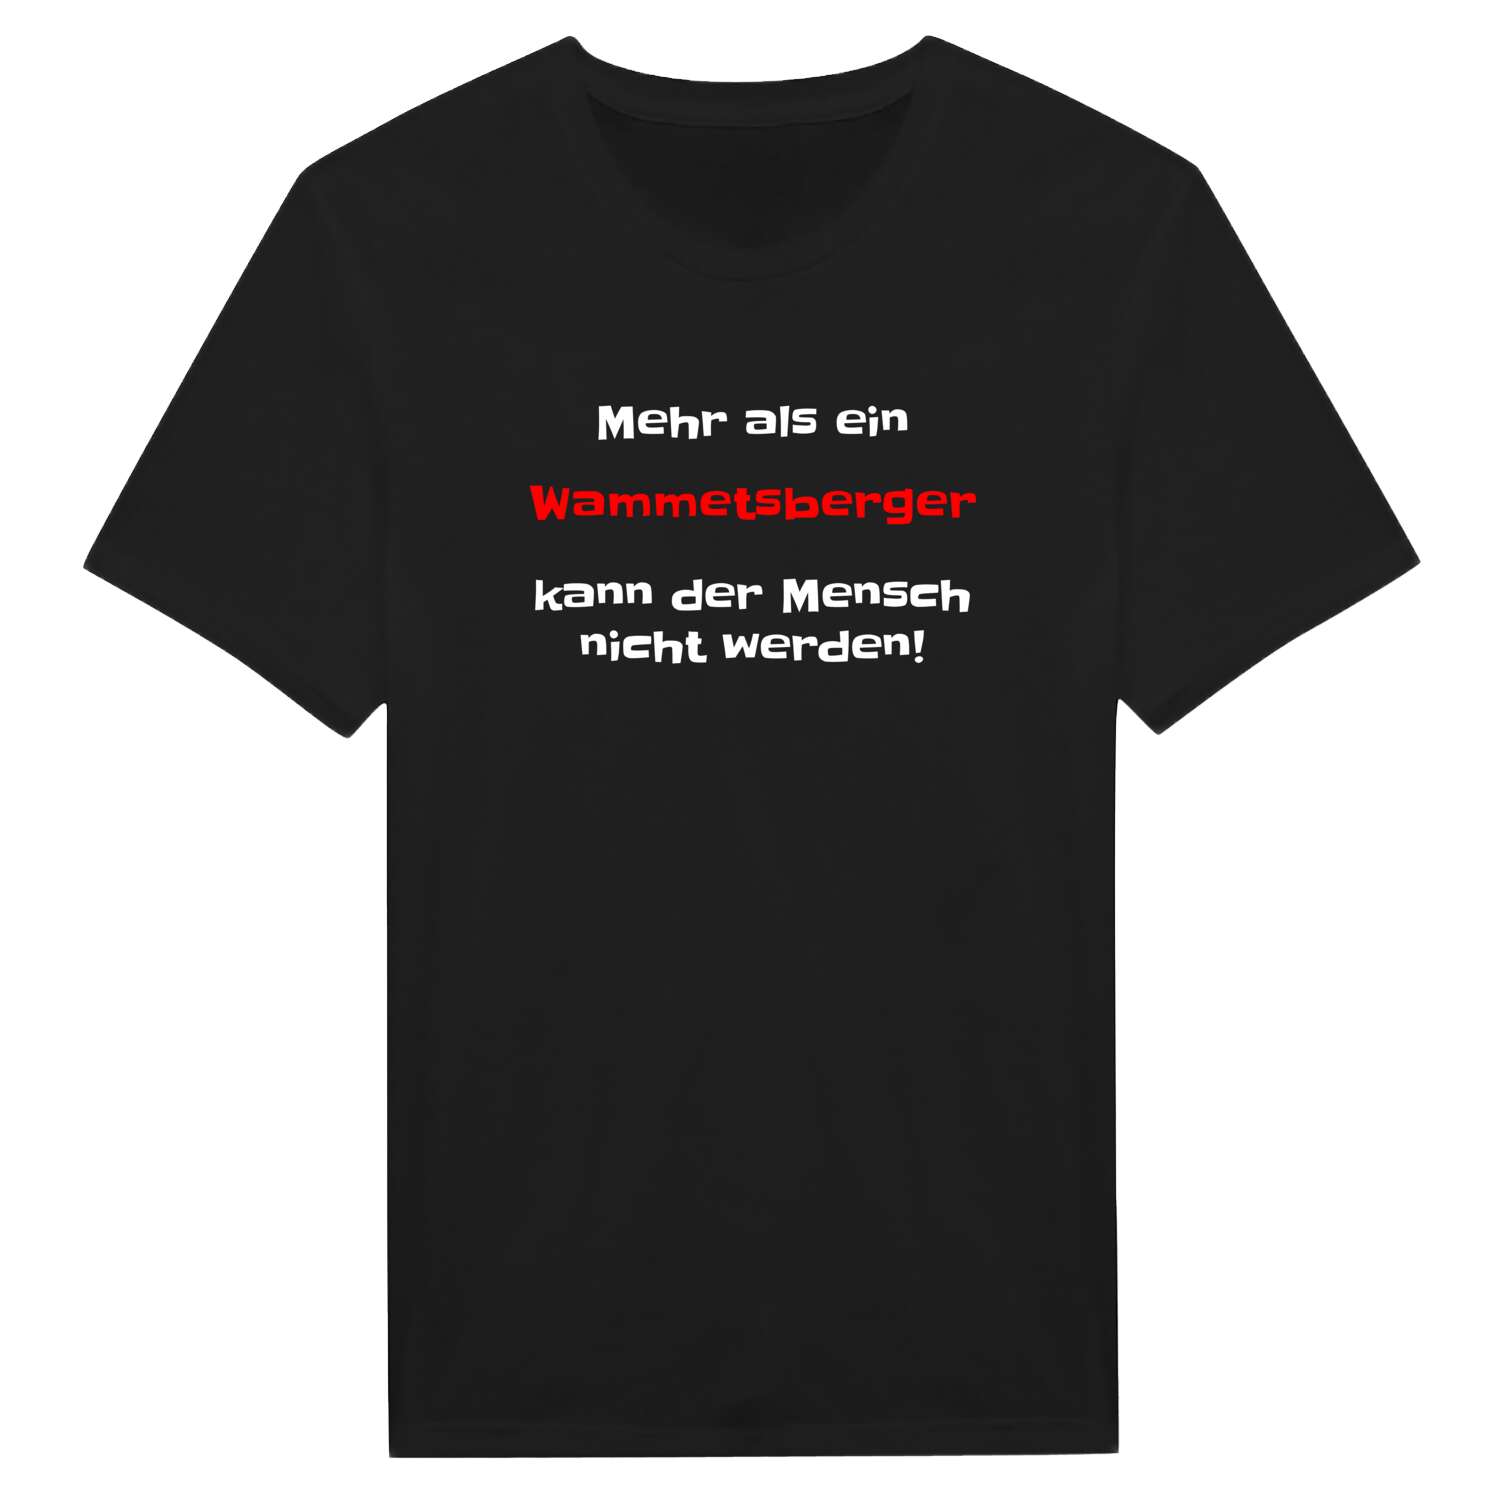 Wammetsberg T-Shirt »Mehr als ein«